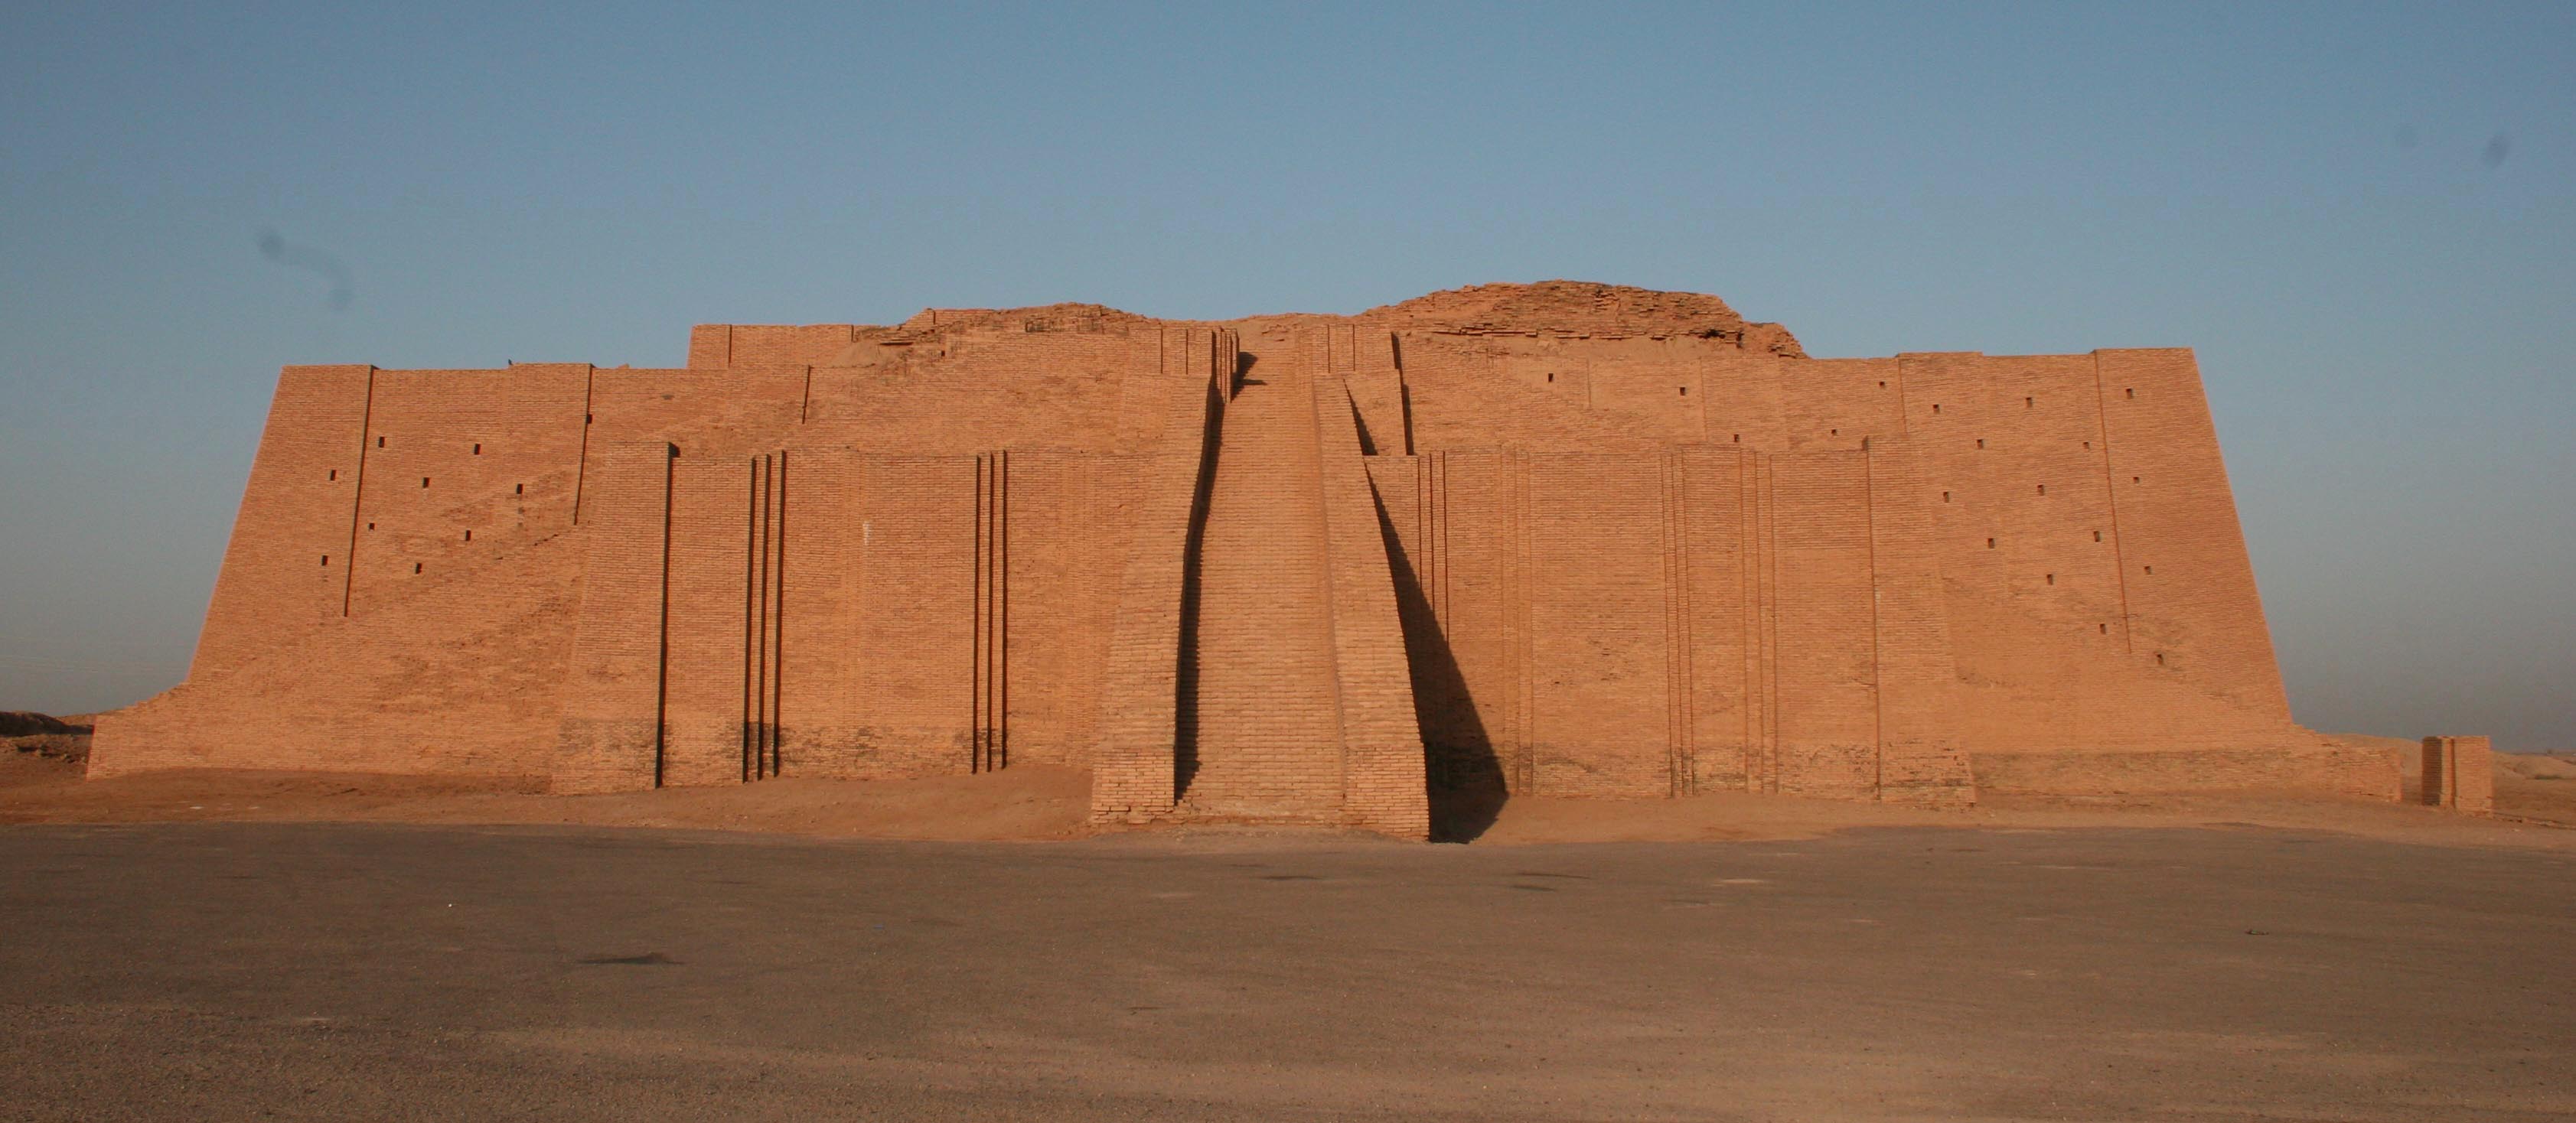 上图：吾珥城的月神塔庙（Ziggurat），是一座两层高的砖建筑物，下层的砖用沥青结合，上层的砖用灰胶结合。这座神庙基本被保存了下来，现已被复原。吾珥是苏美尔人敬拜月神辛（Sin，苏美尔语 Nanna）的中心，吾珥第三王朝时期，乌尔纳姆在吾珥修筑了城墙、兴建了巨大的神庙，使吾珥进入了最繁荣的时期。